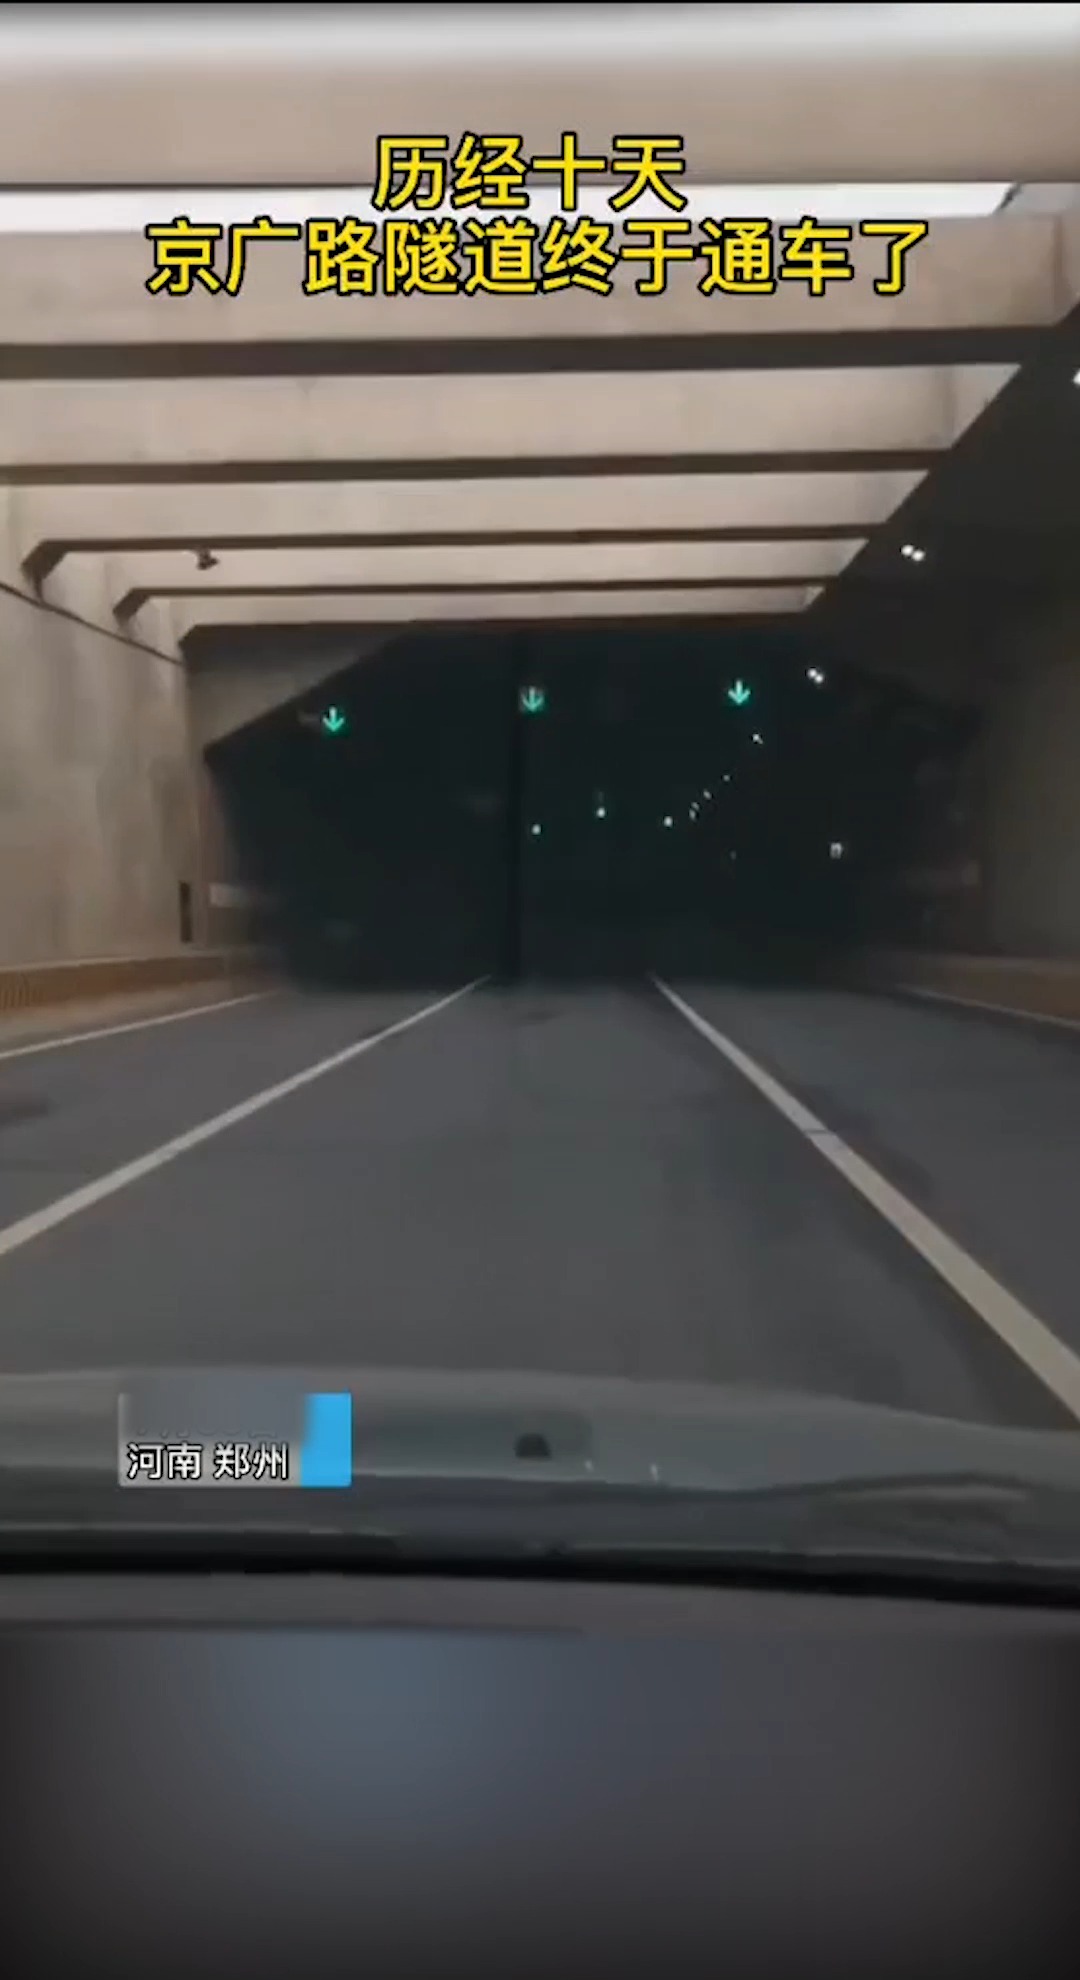 我要上热门经历十天京广路隧道终于通过车了